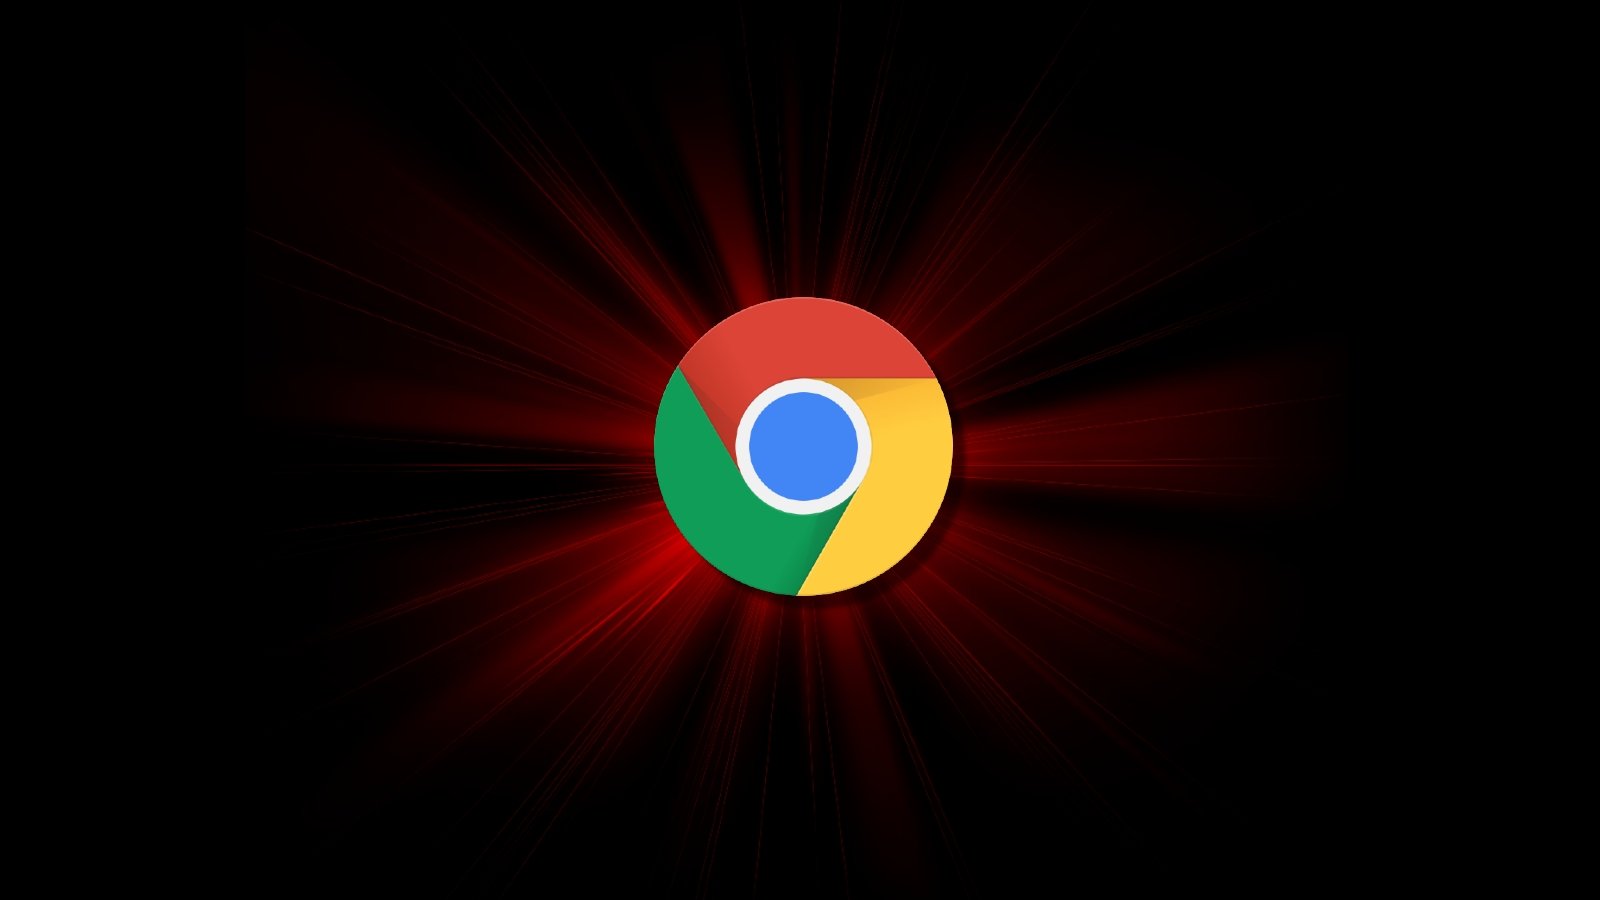 Google Chrome logo on a red starburst